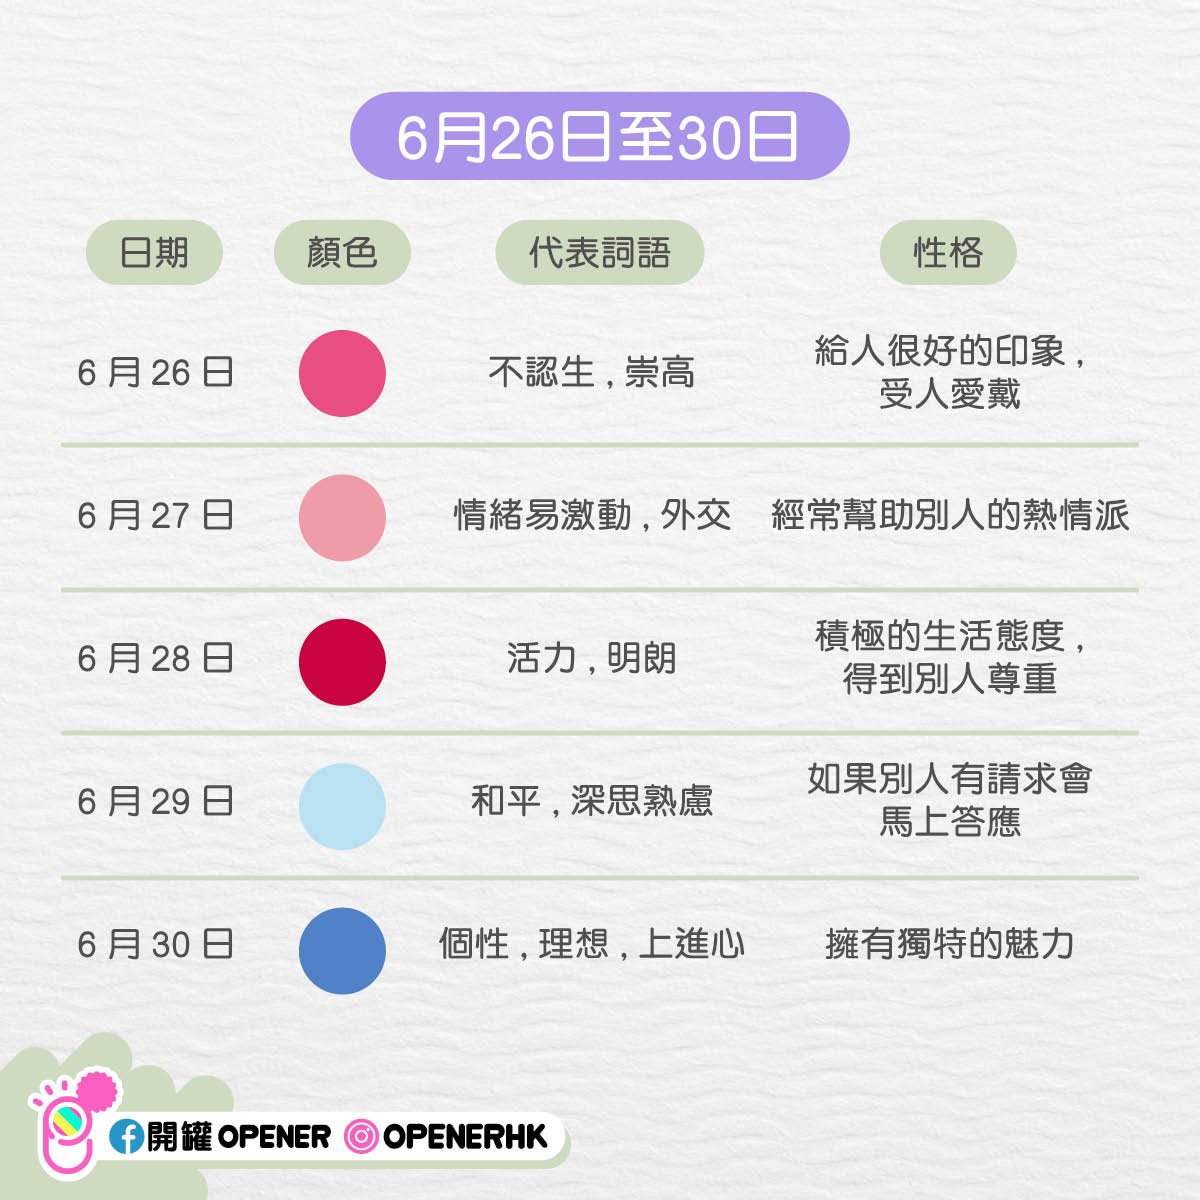 童裝 潮流品www Bonbon Jr Com 韓國365 天測驗 1 6 月 從你的生日 看出你的性格與代表色